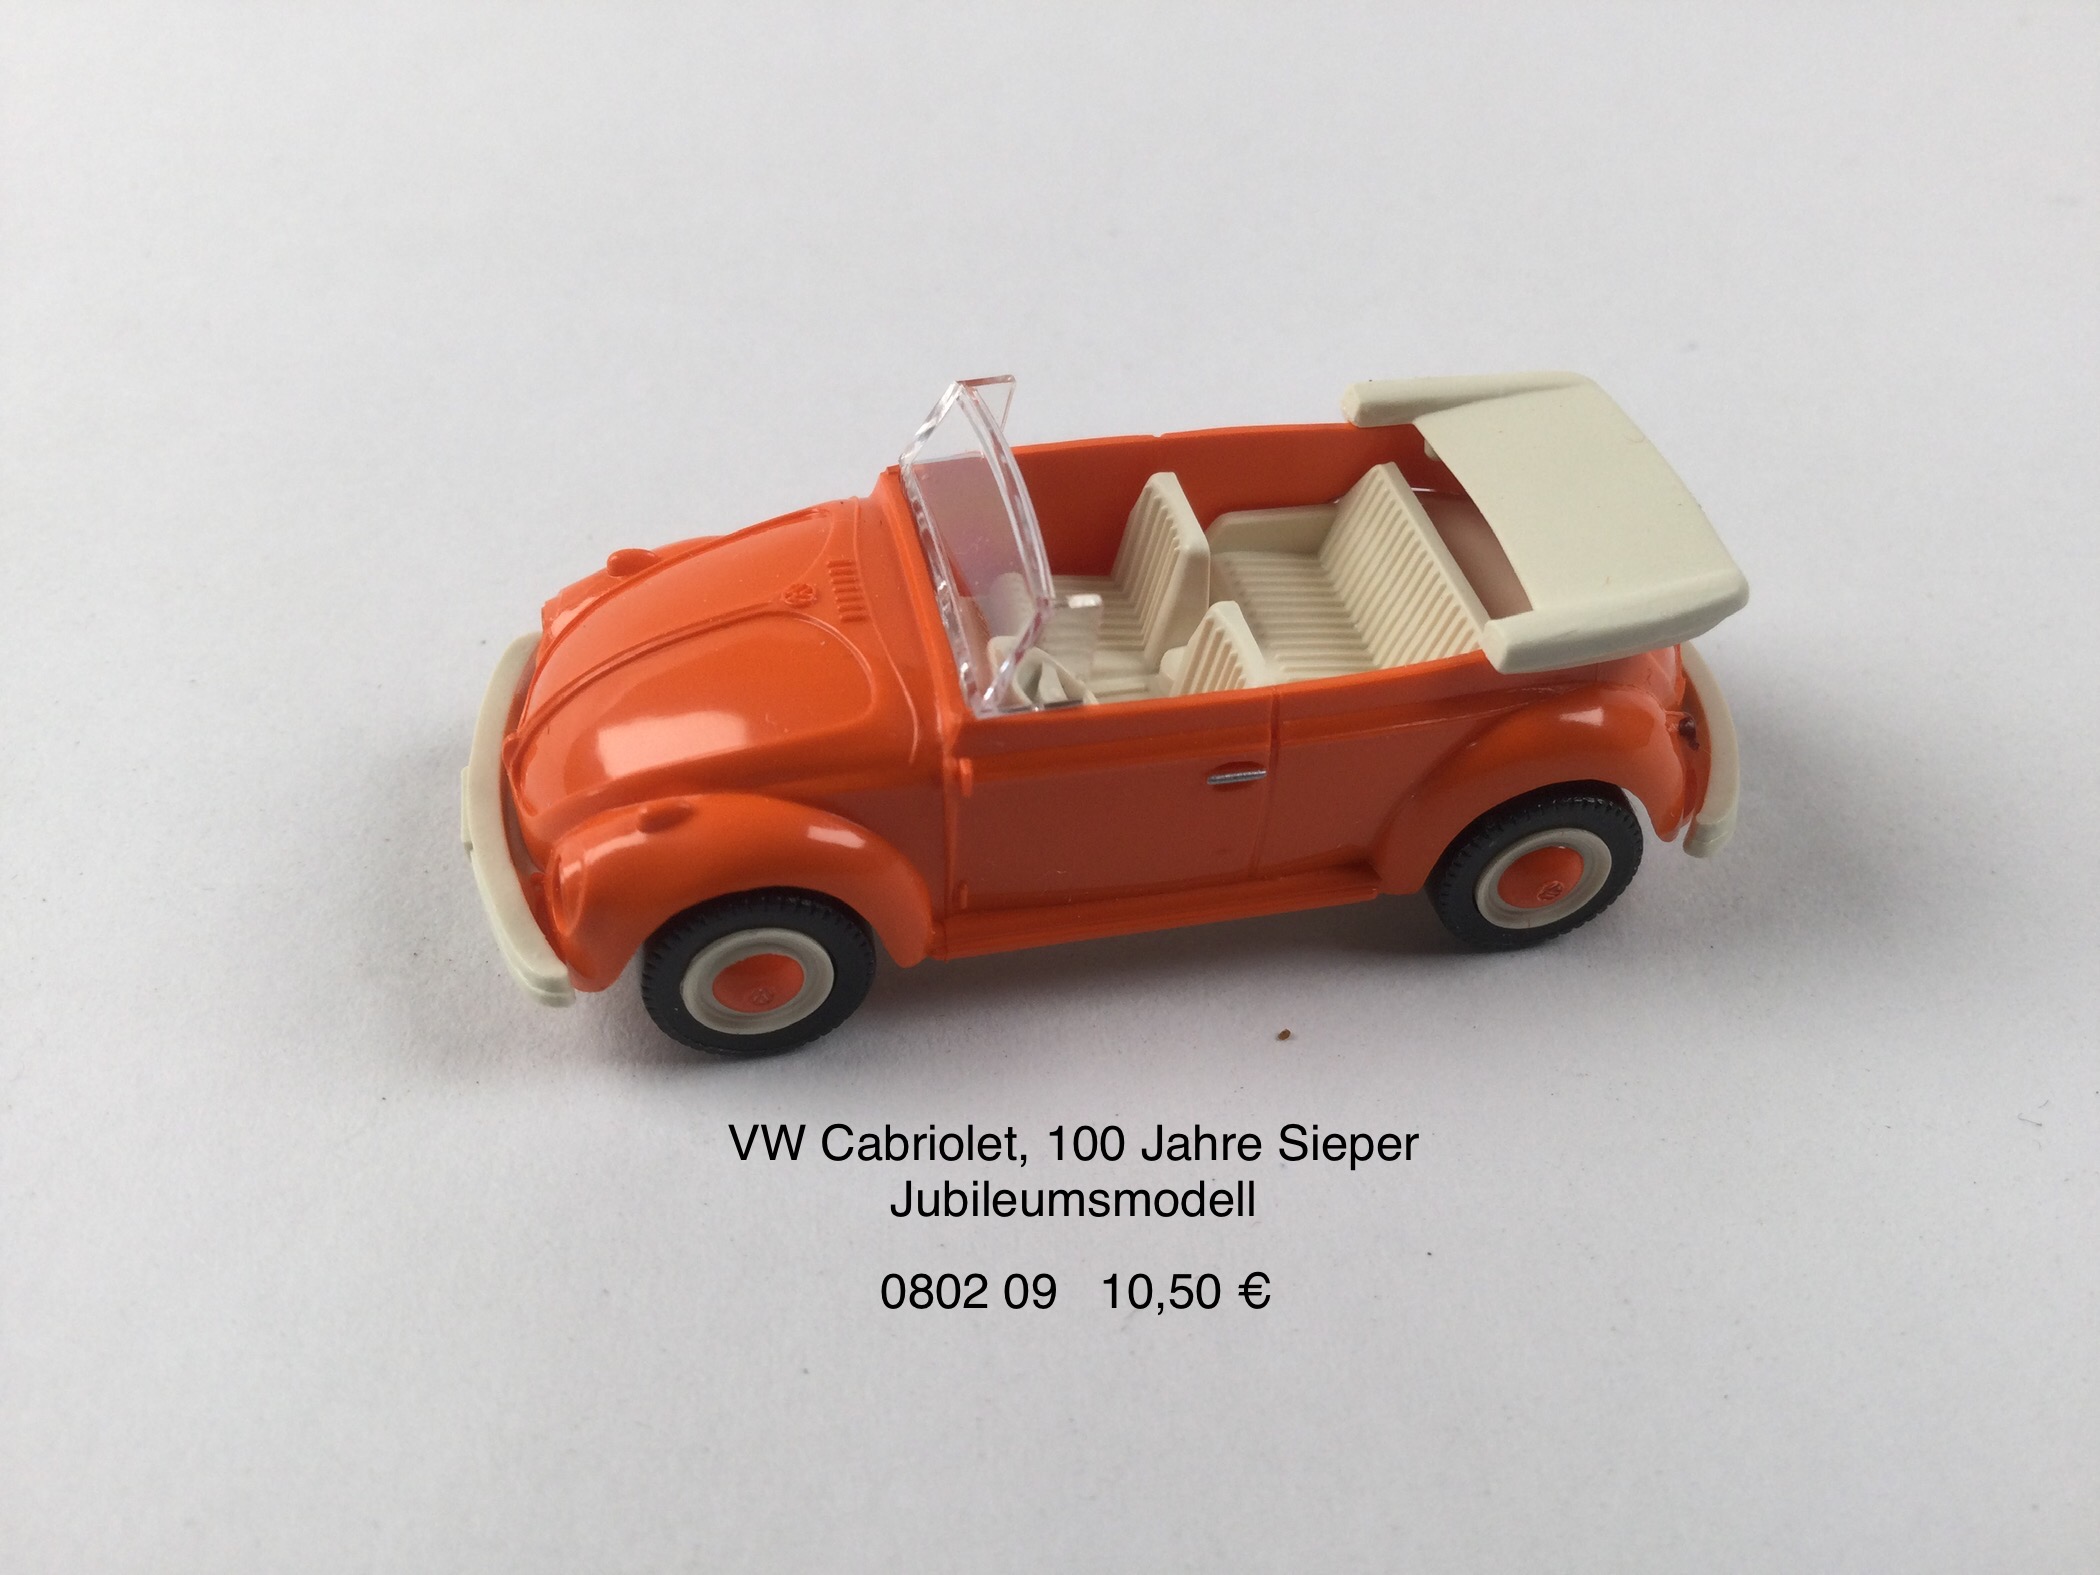 VW Cabriolet, 100 Jahre Sieper Jubiläumsmodell